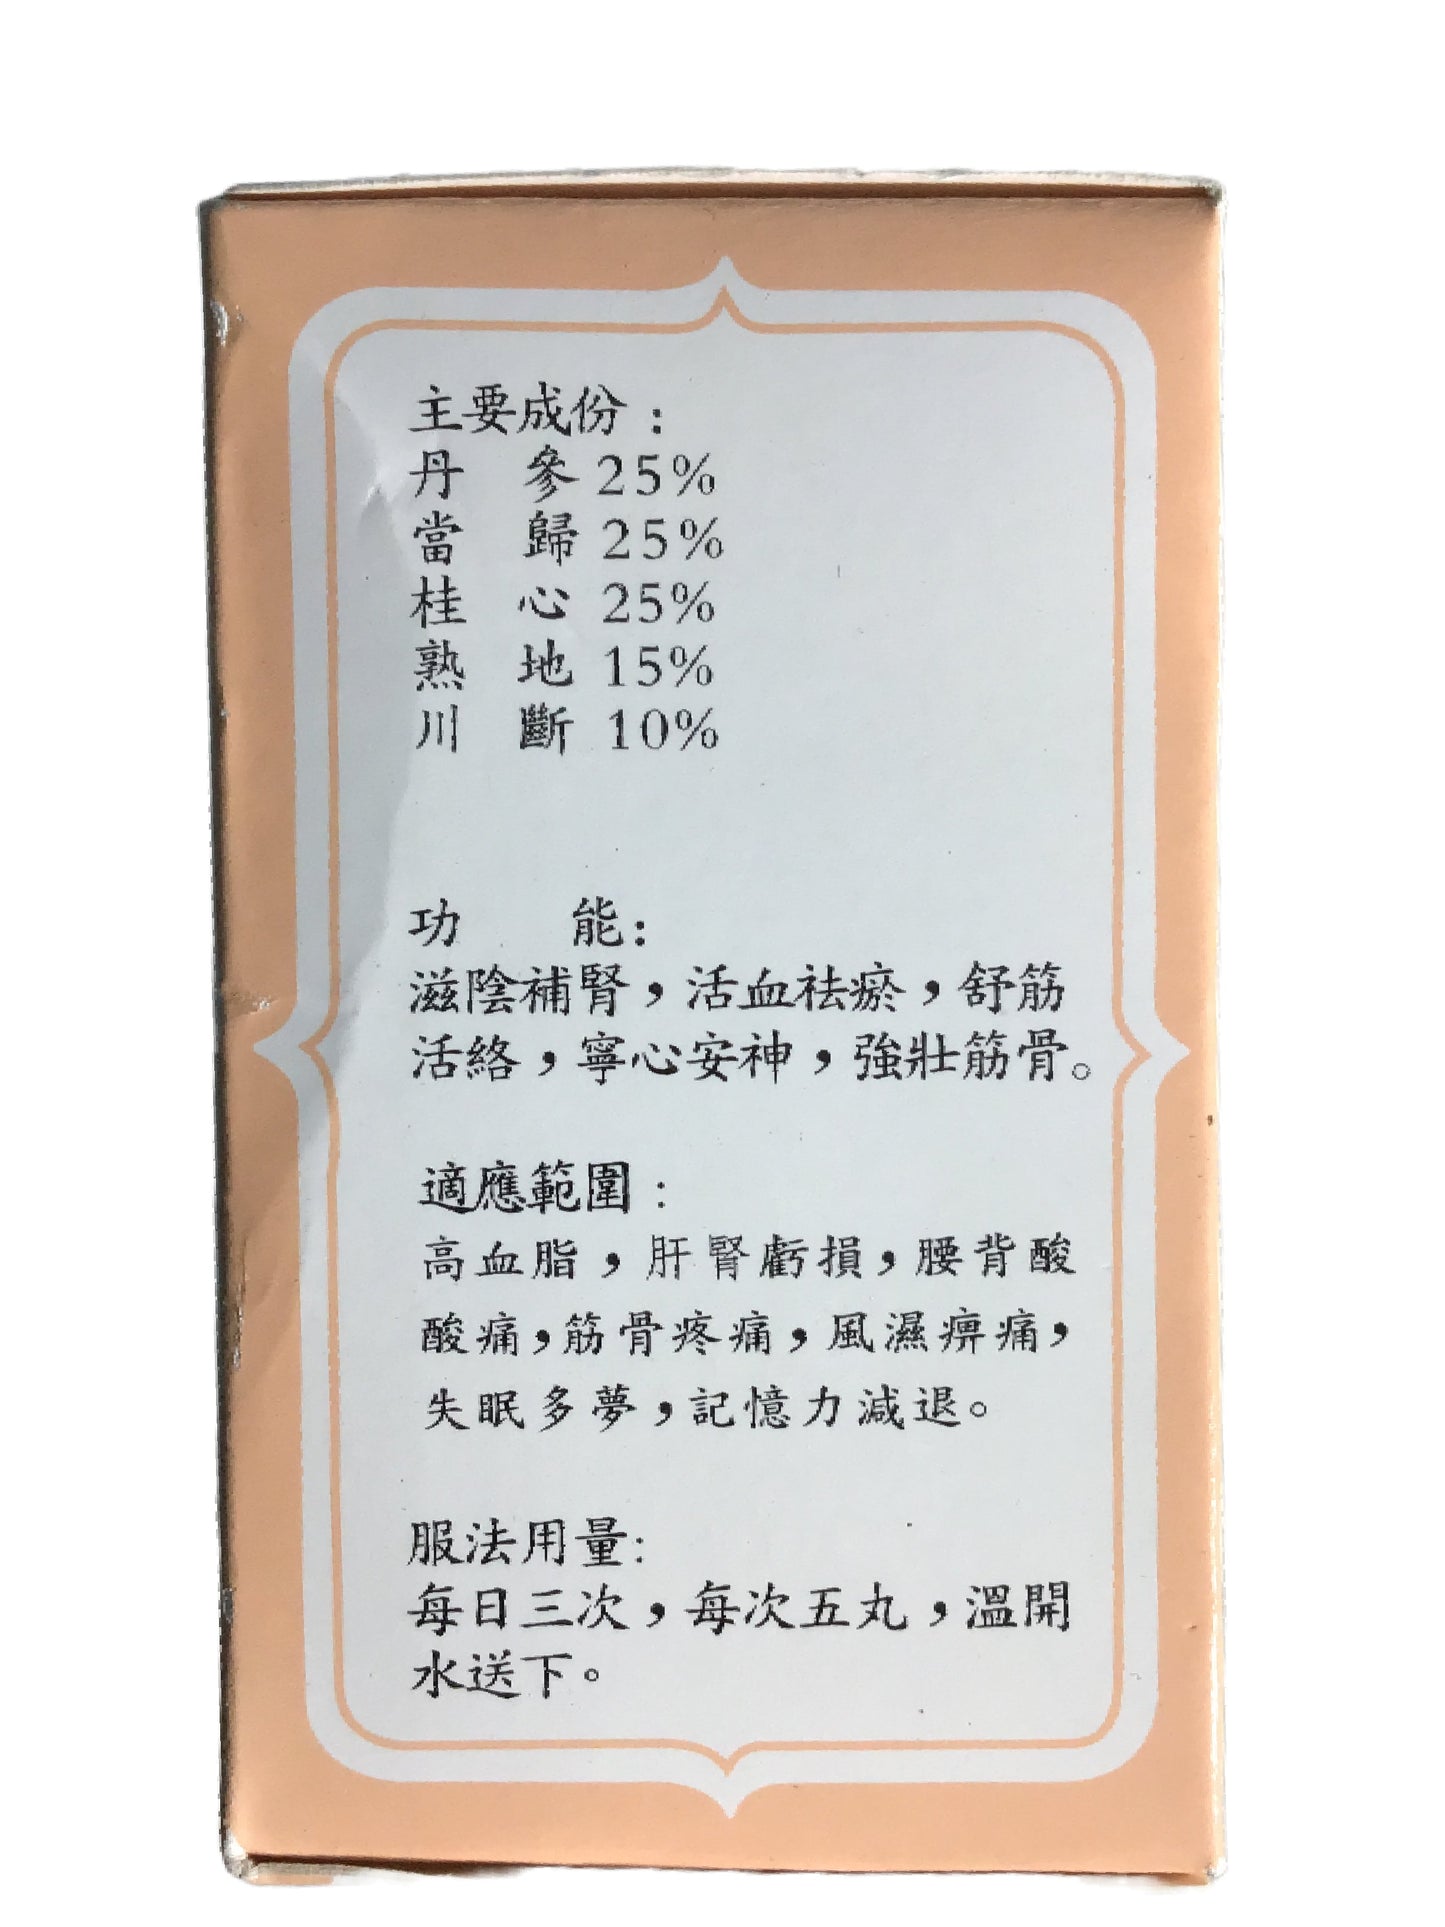 China Tung Shueh Pills 中国通血丸 80 Capsules